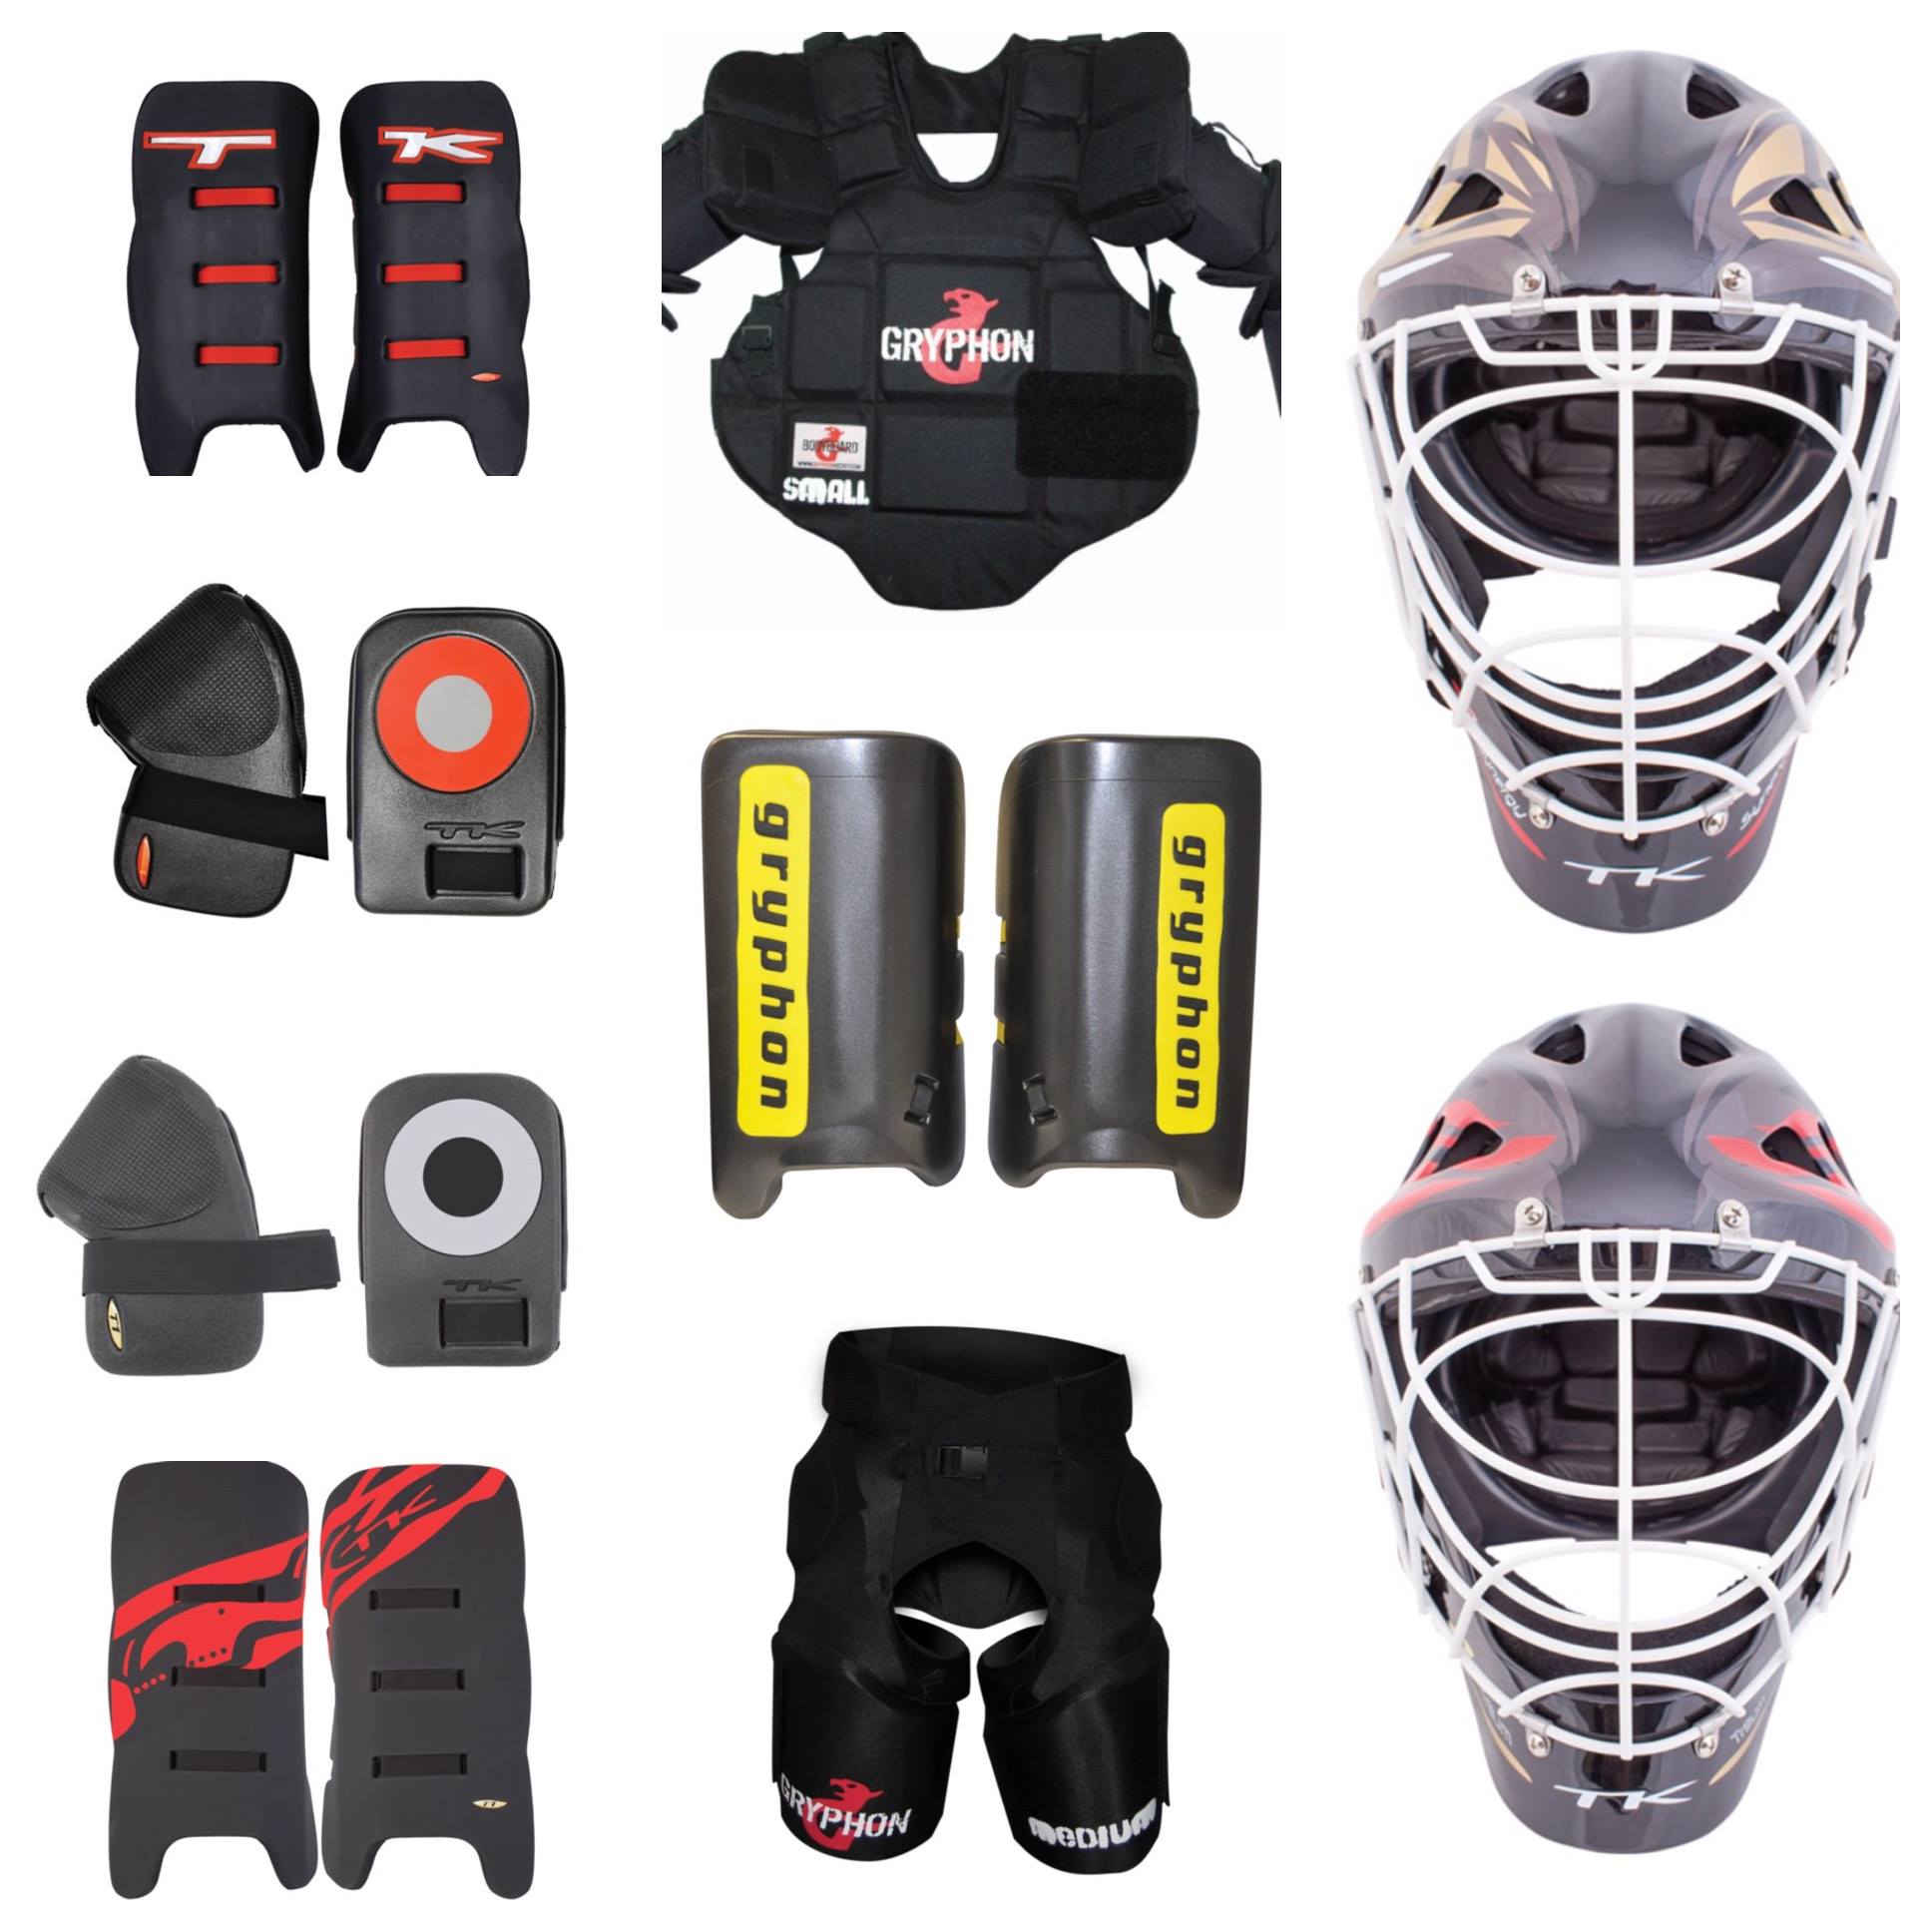 Hockey goalkeeper's equipment: The evolution of Rule 11